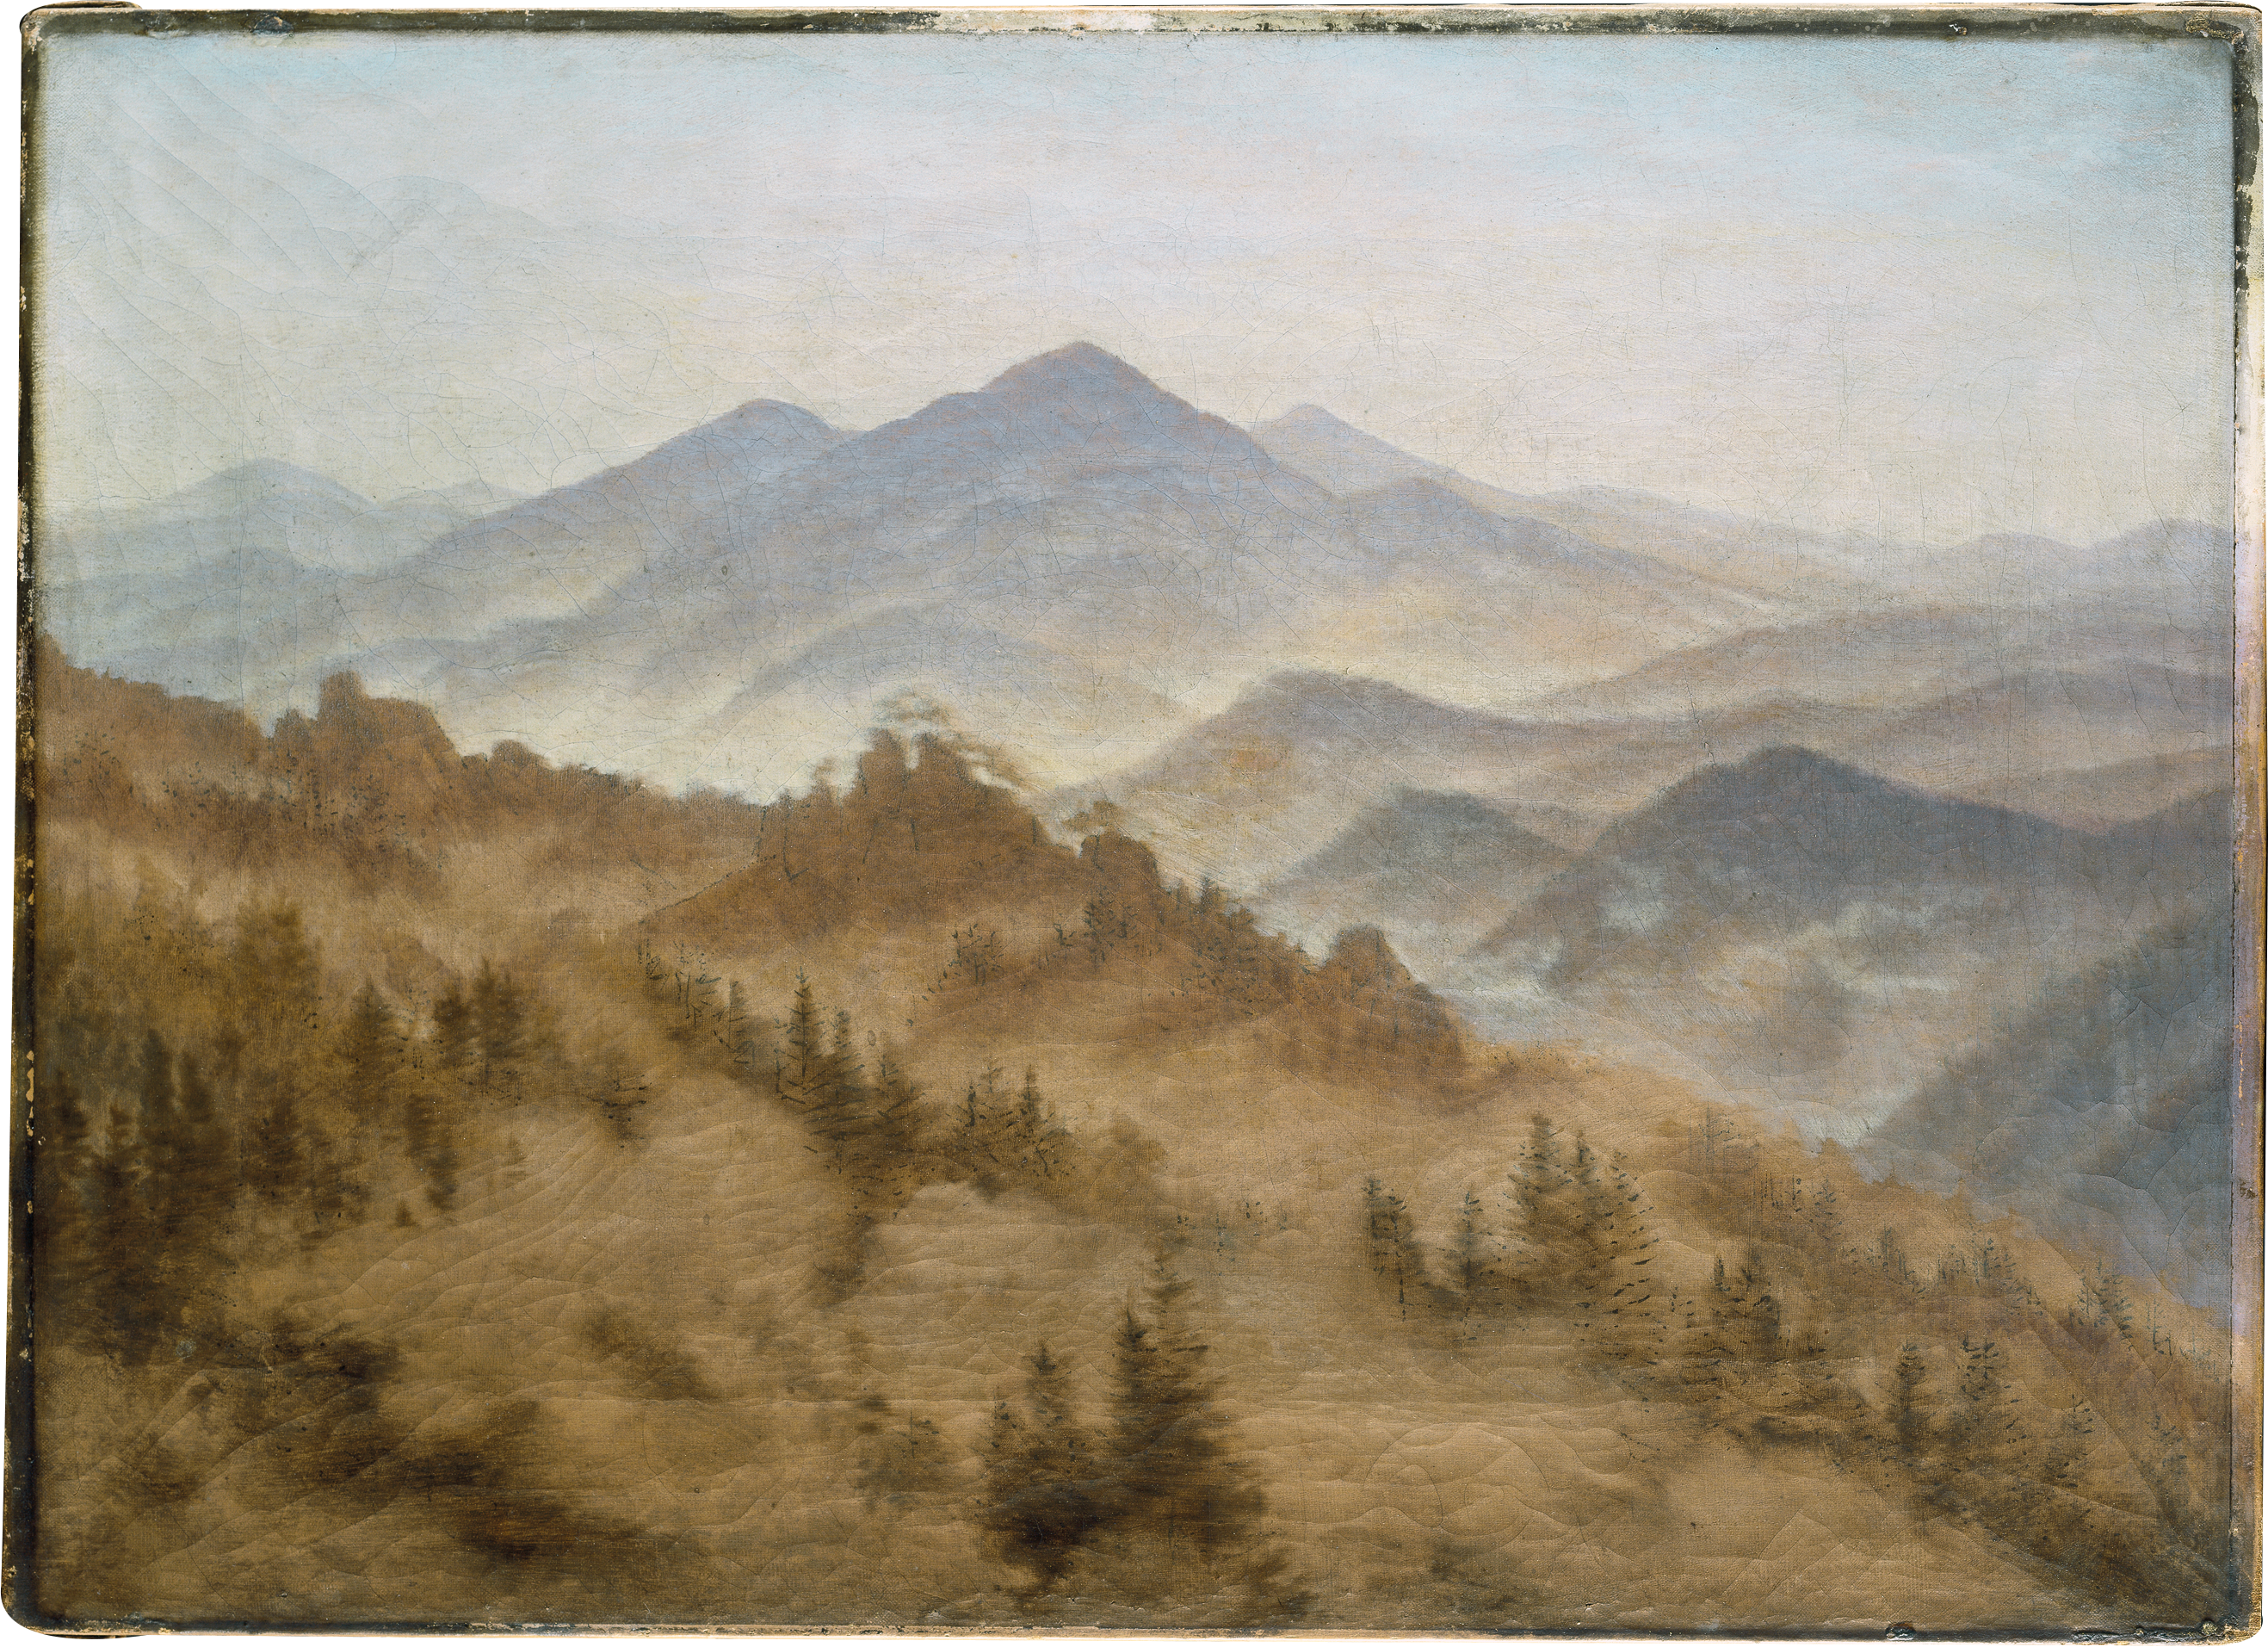 迎霧山景 by Caspar David Friedrich - 約 1835 年 - 34.9 x 48.5 釐米 